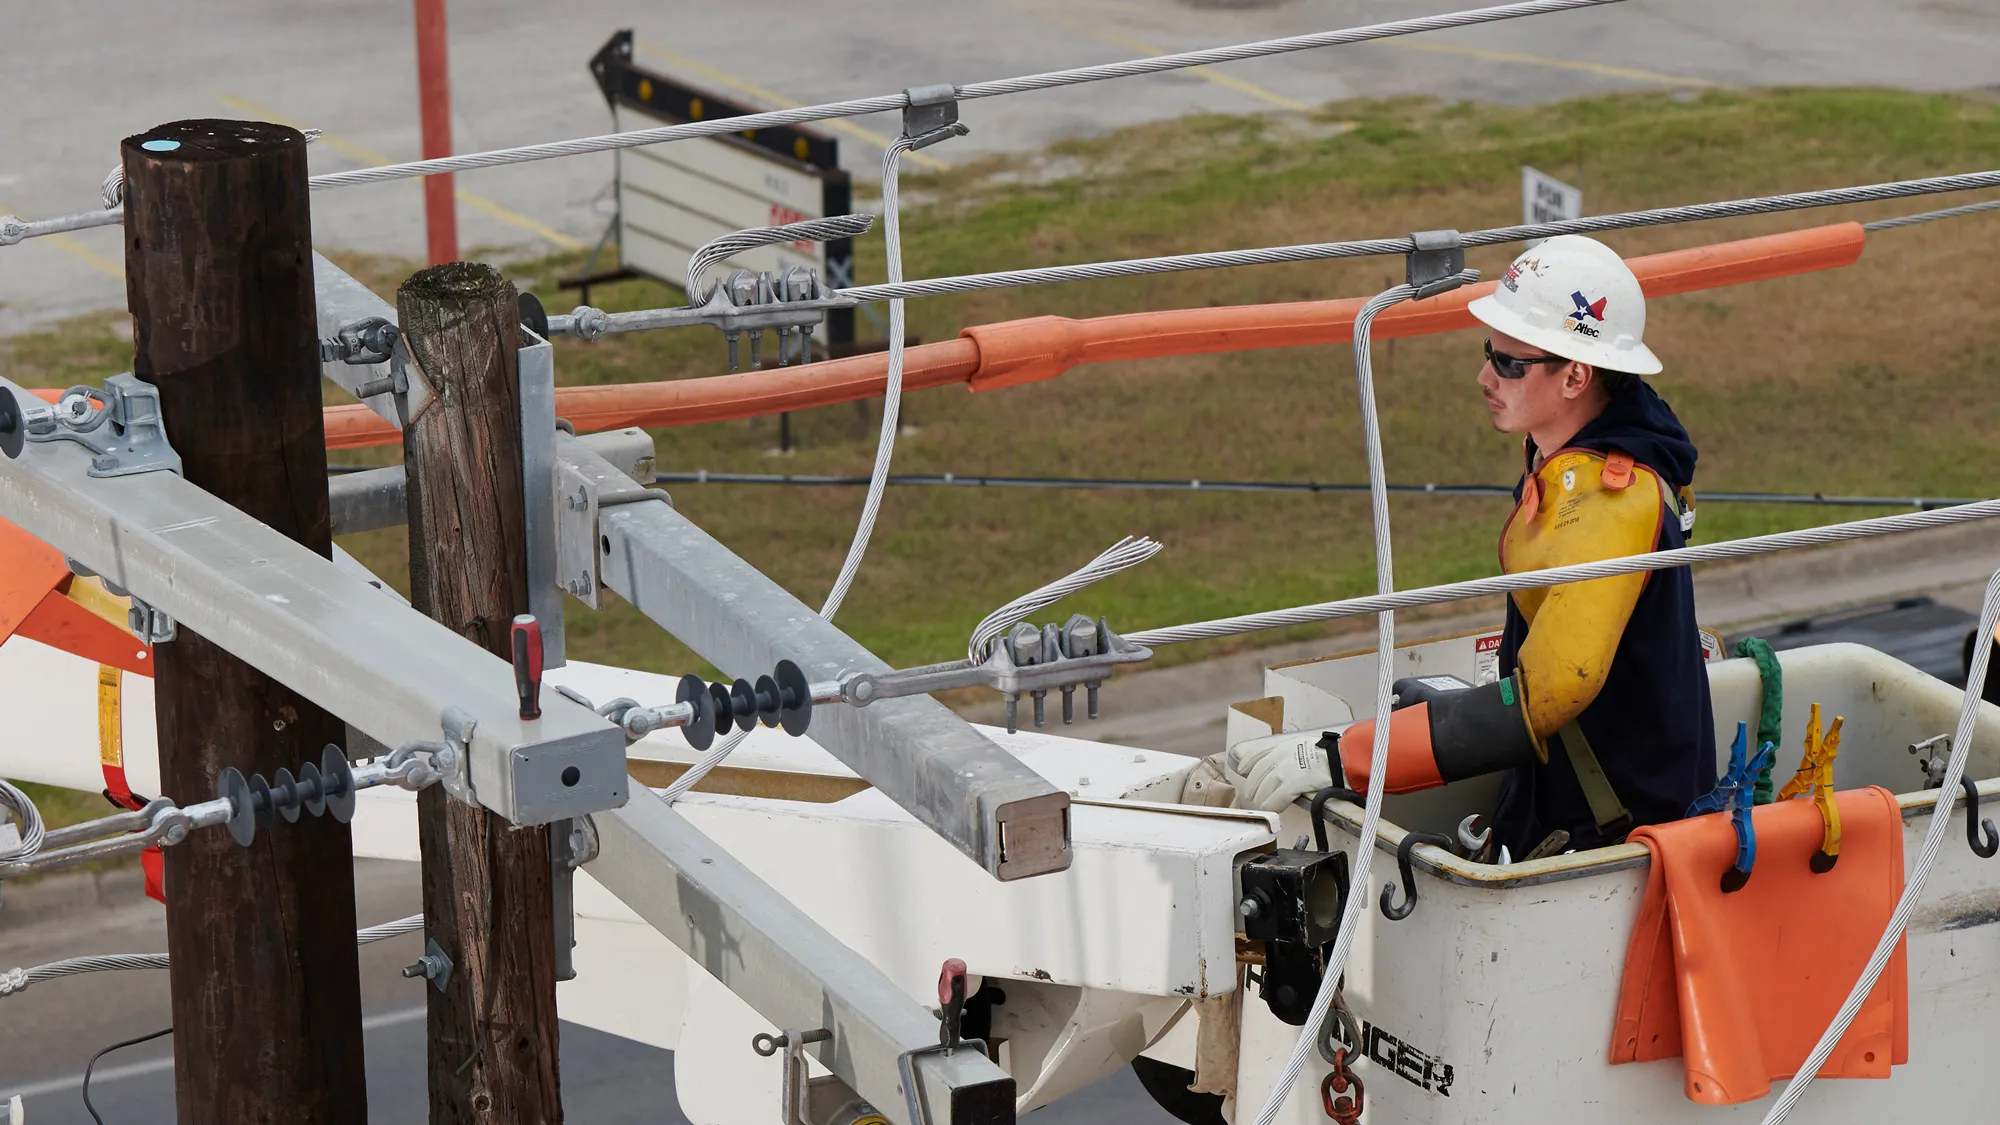 A Linetec worker fixes power lines in Harlingen Texas.